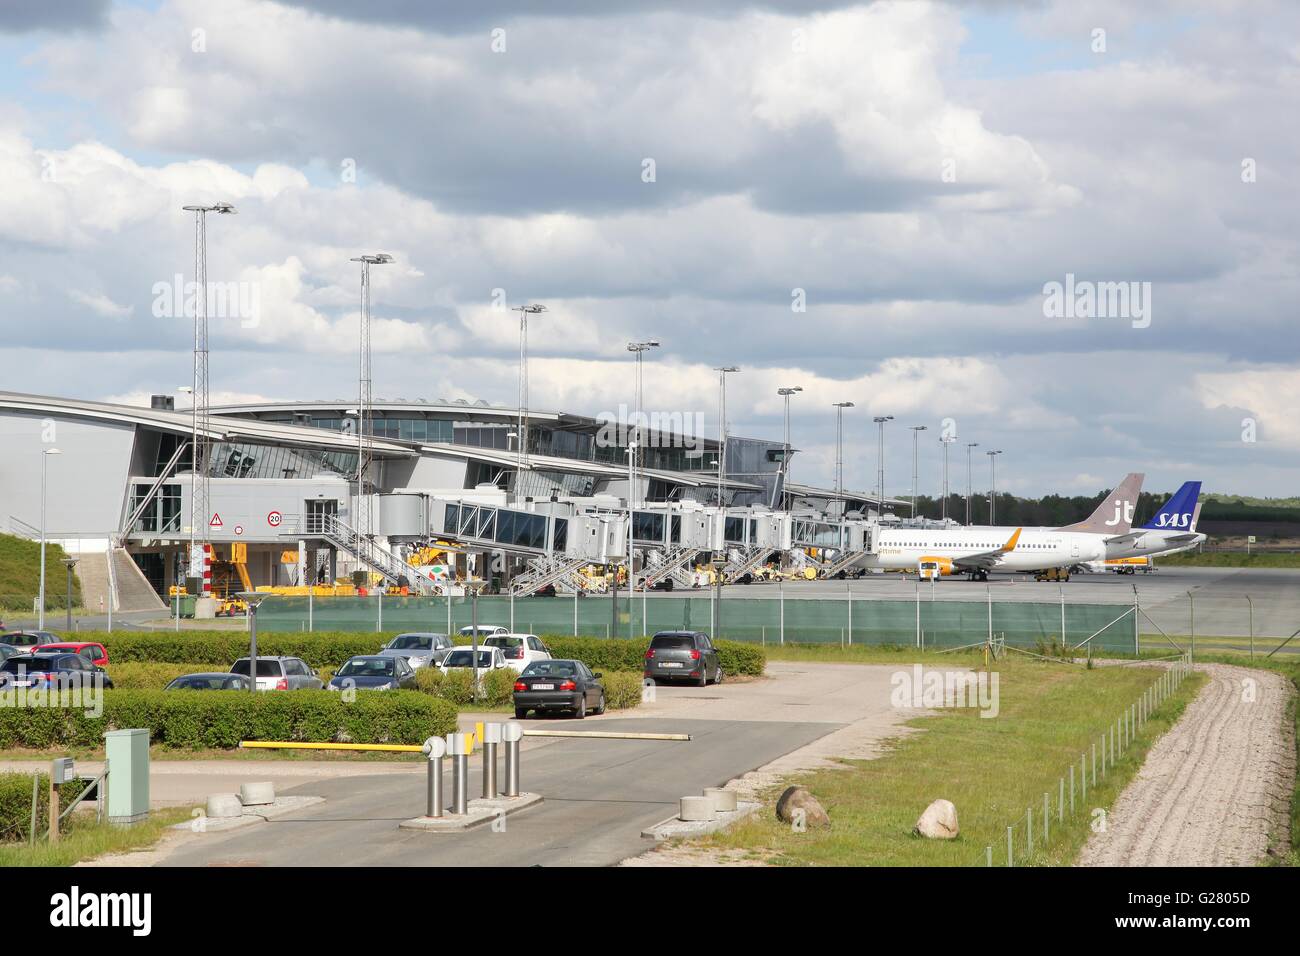 Billund airport in Denmark Stock Photo - Alamy